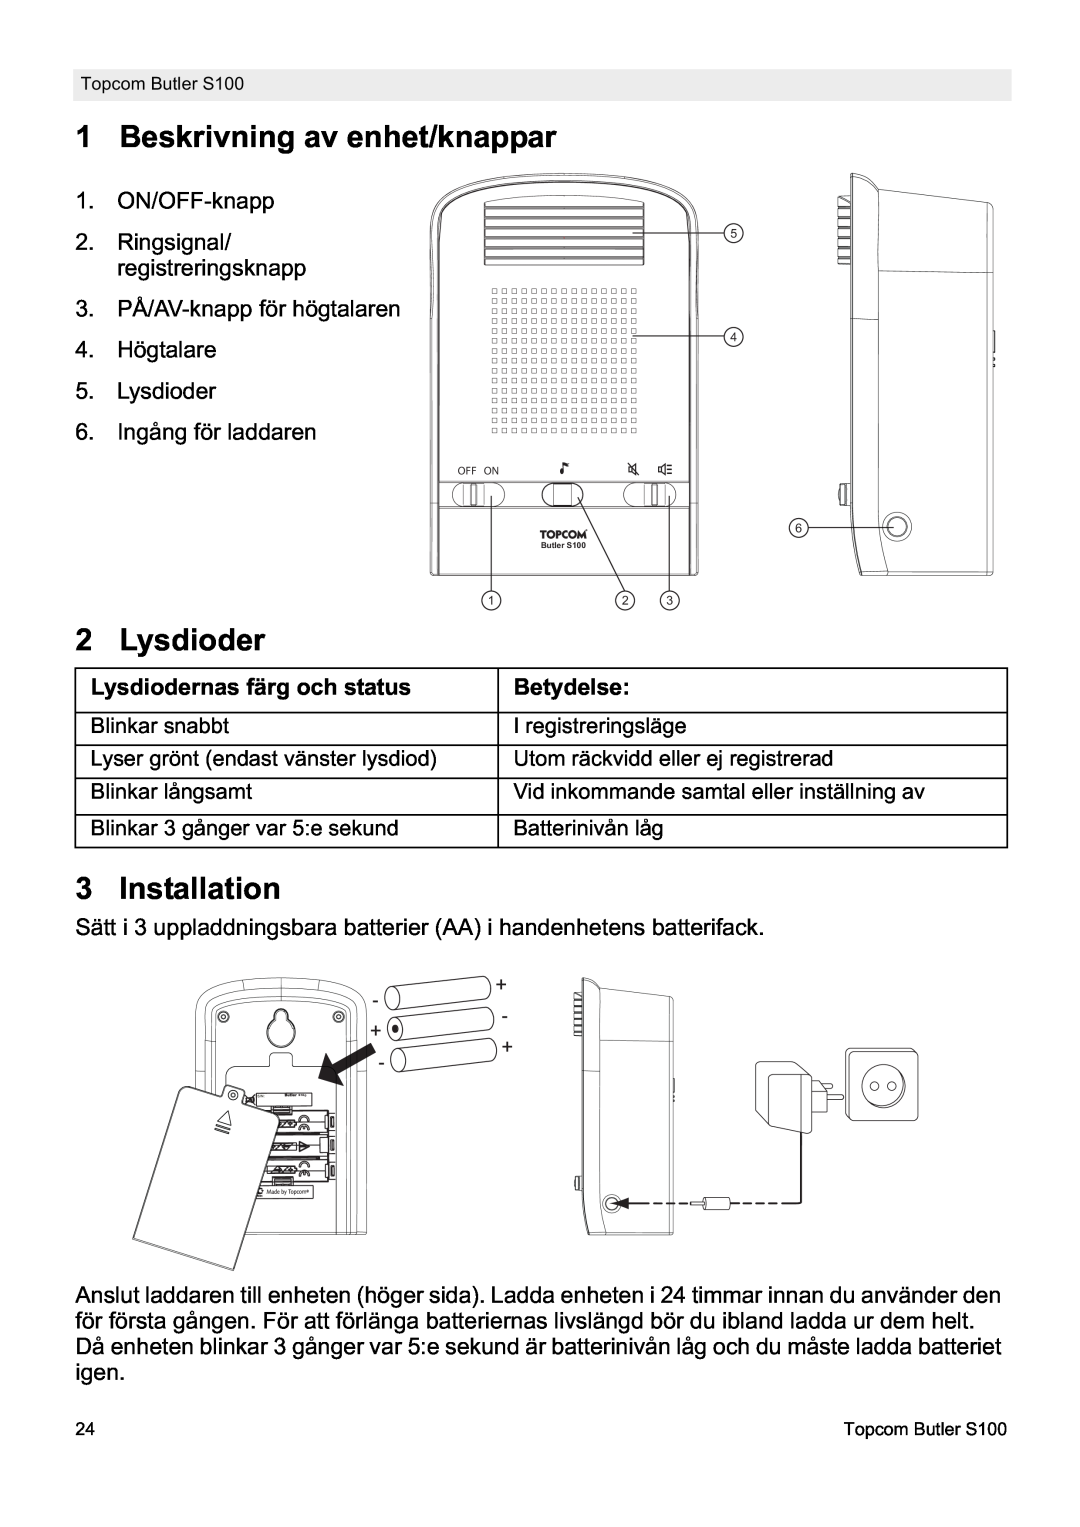 Topcom S100 manual do utilizador Beskrivning av enhet/knappar, Installation, Lysdiodernas färg och status, Betydelse 